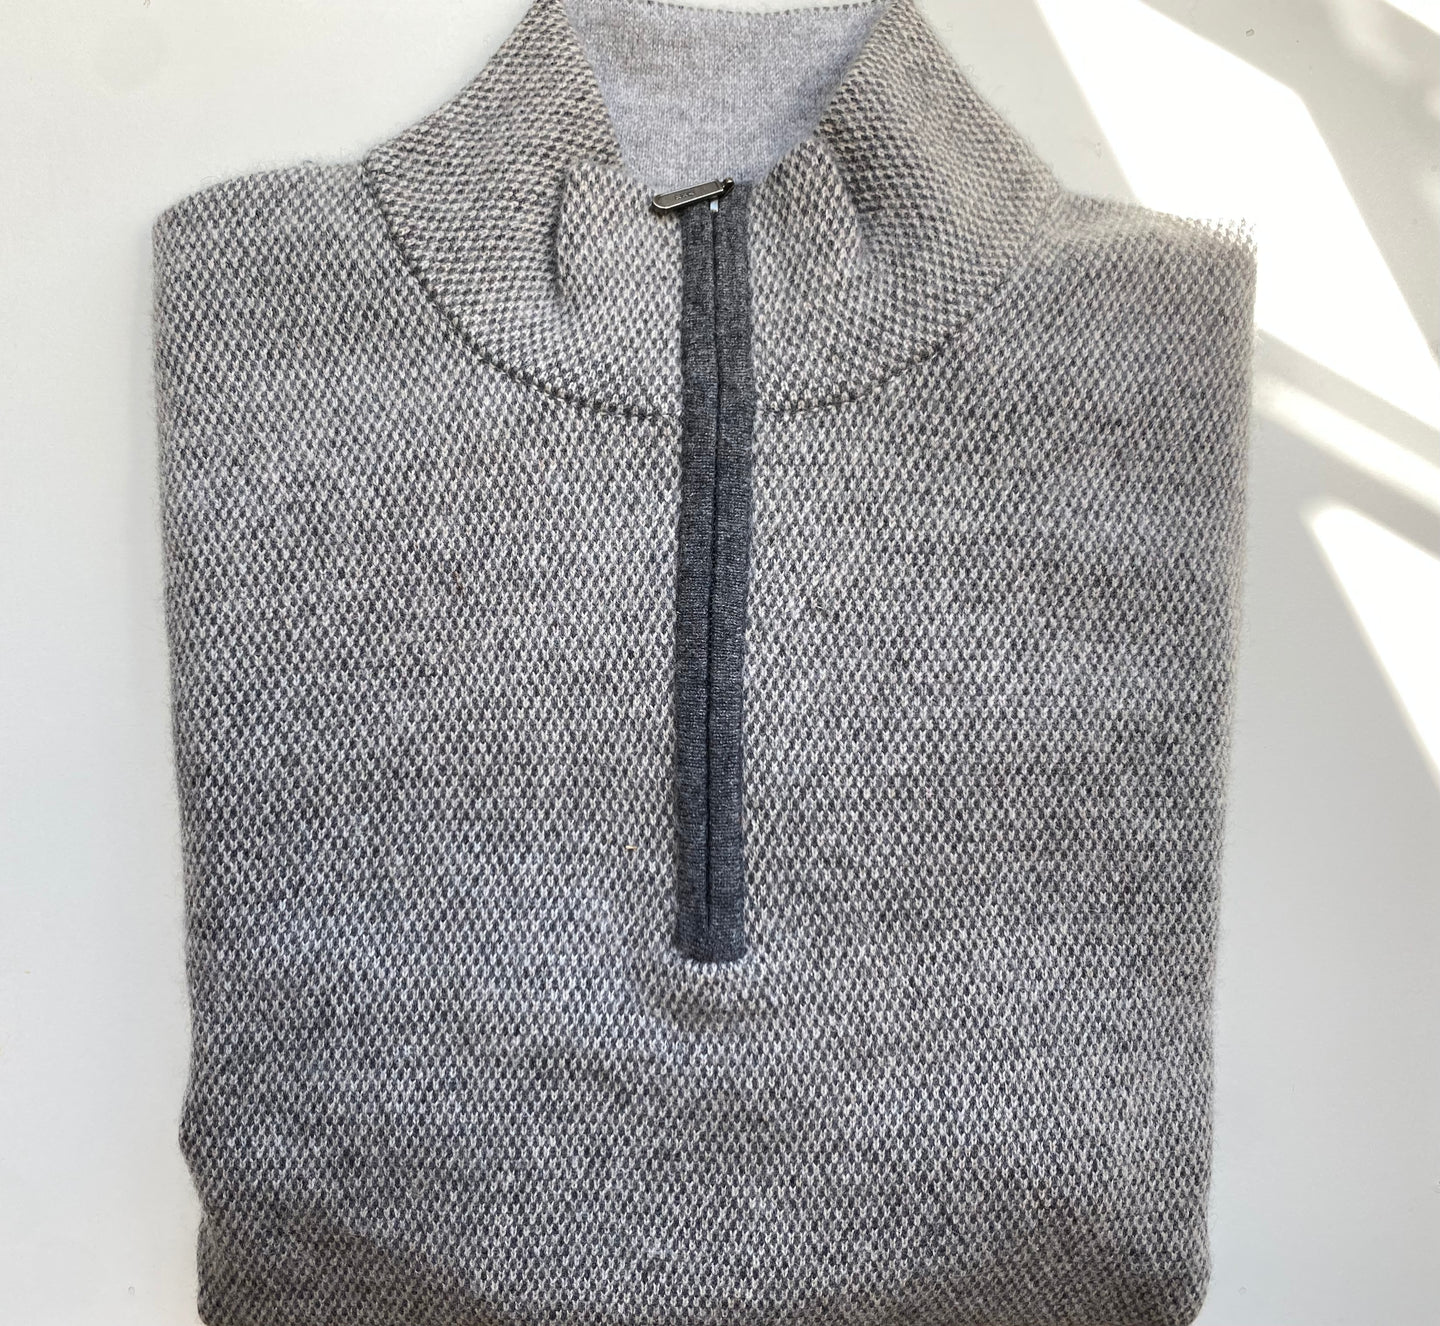 Kinross Men's Detail Quarter Zip 100% Cashmere Sweater